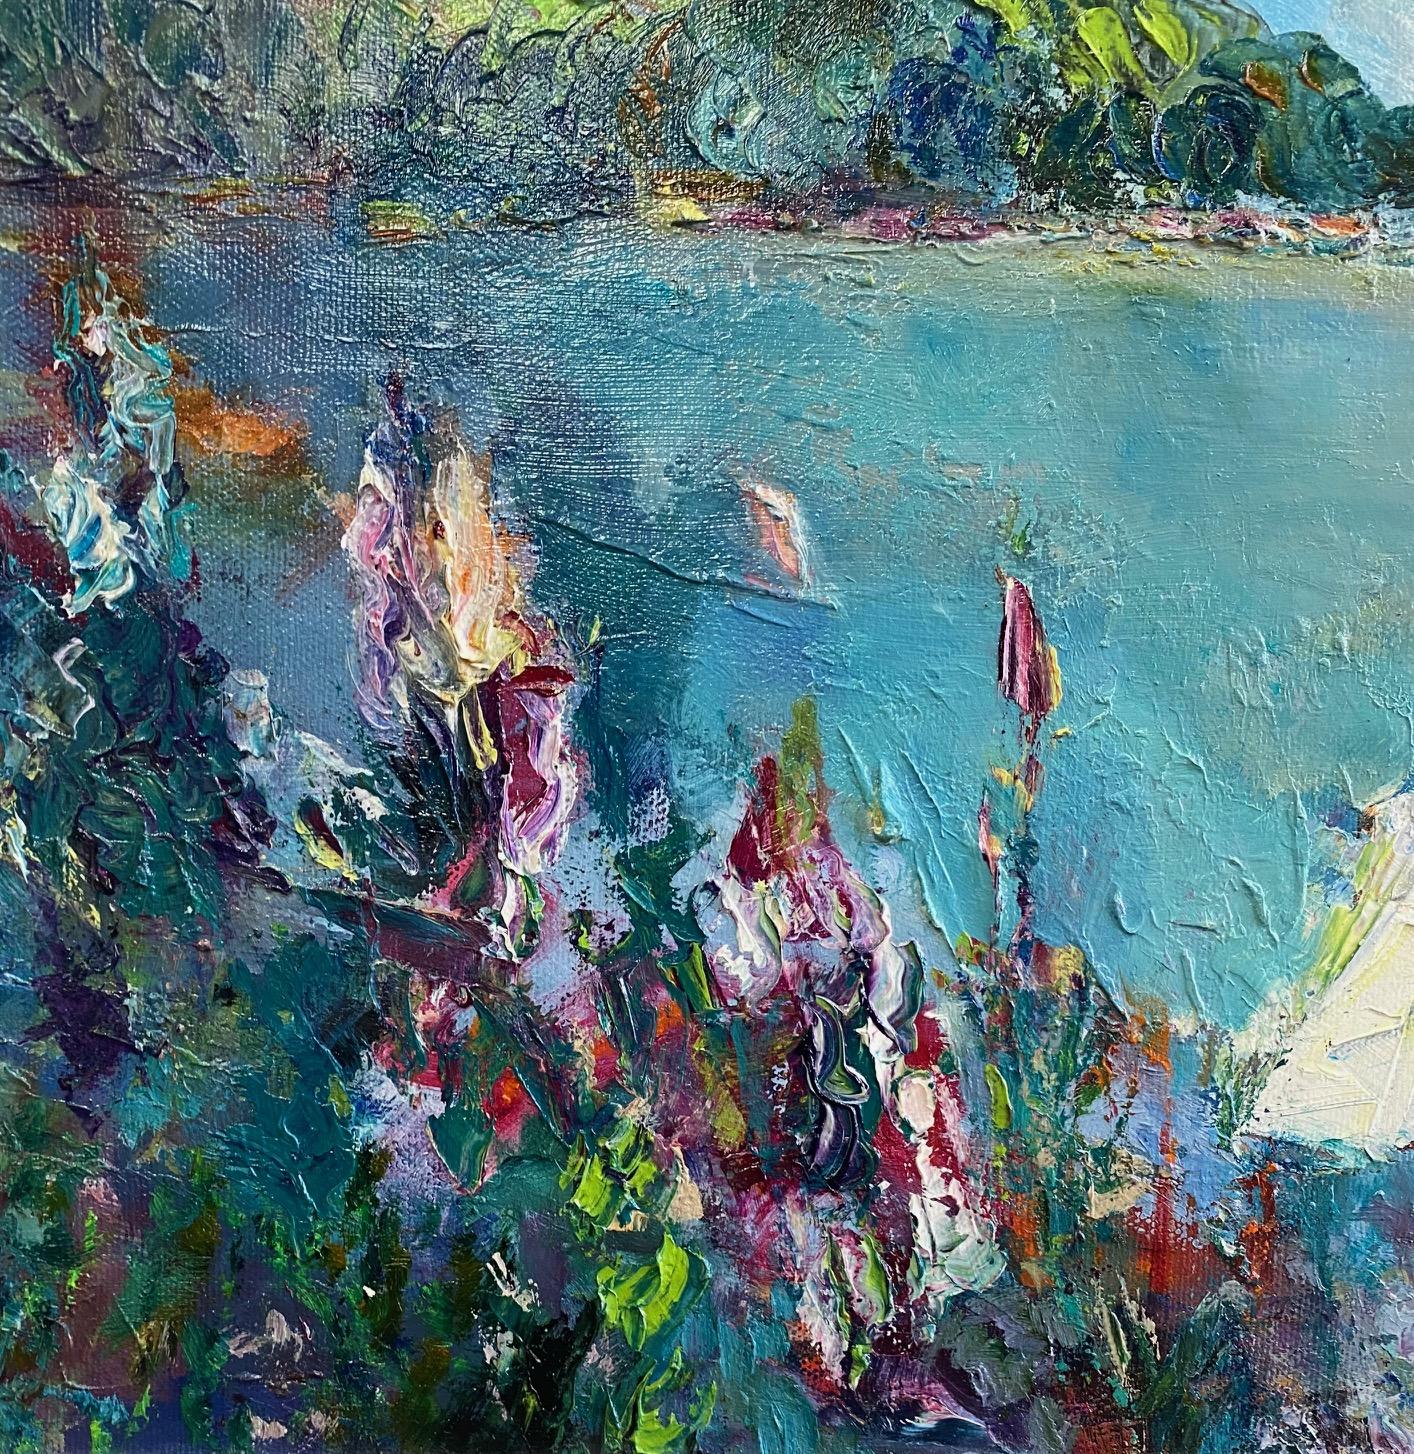 Bermuda, originelle abstrakte expressionistische Meereslandschaft (Abstrakter Expressionismus), Painting, von Carol Carpenter